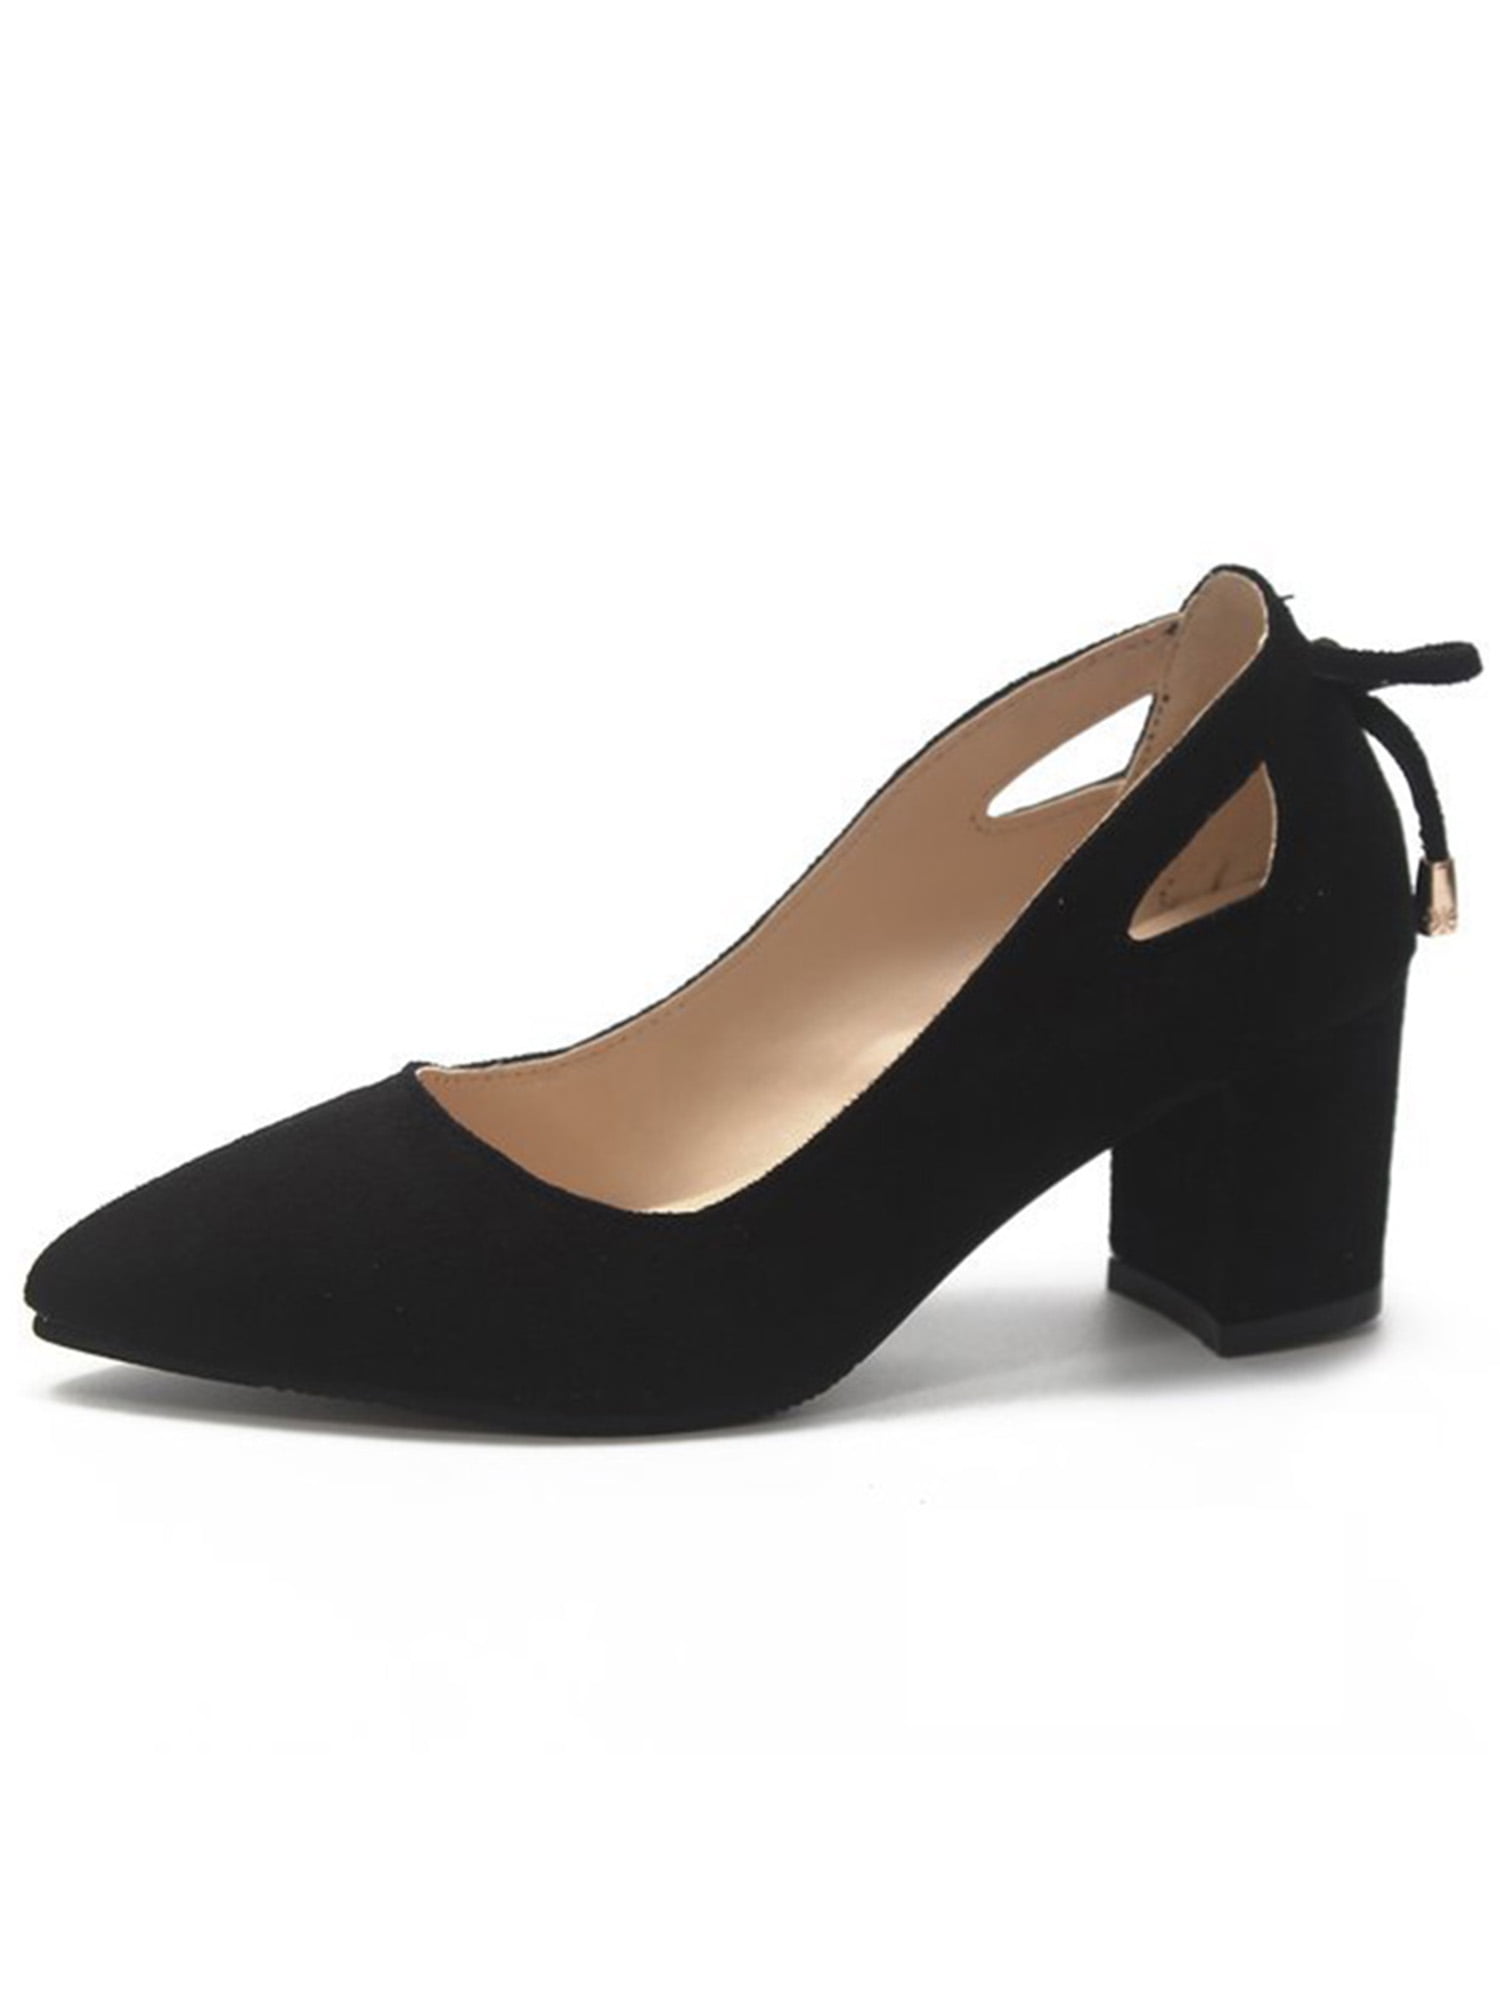 Fashion Ladies Fashion Block Heel Square Toe Work Shoes-Black | Jumia  Nigeria